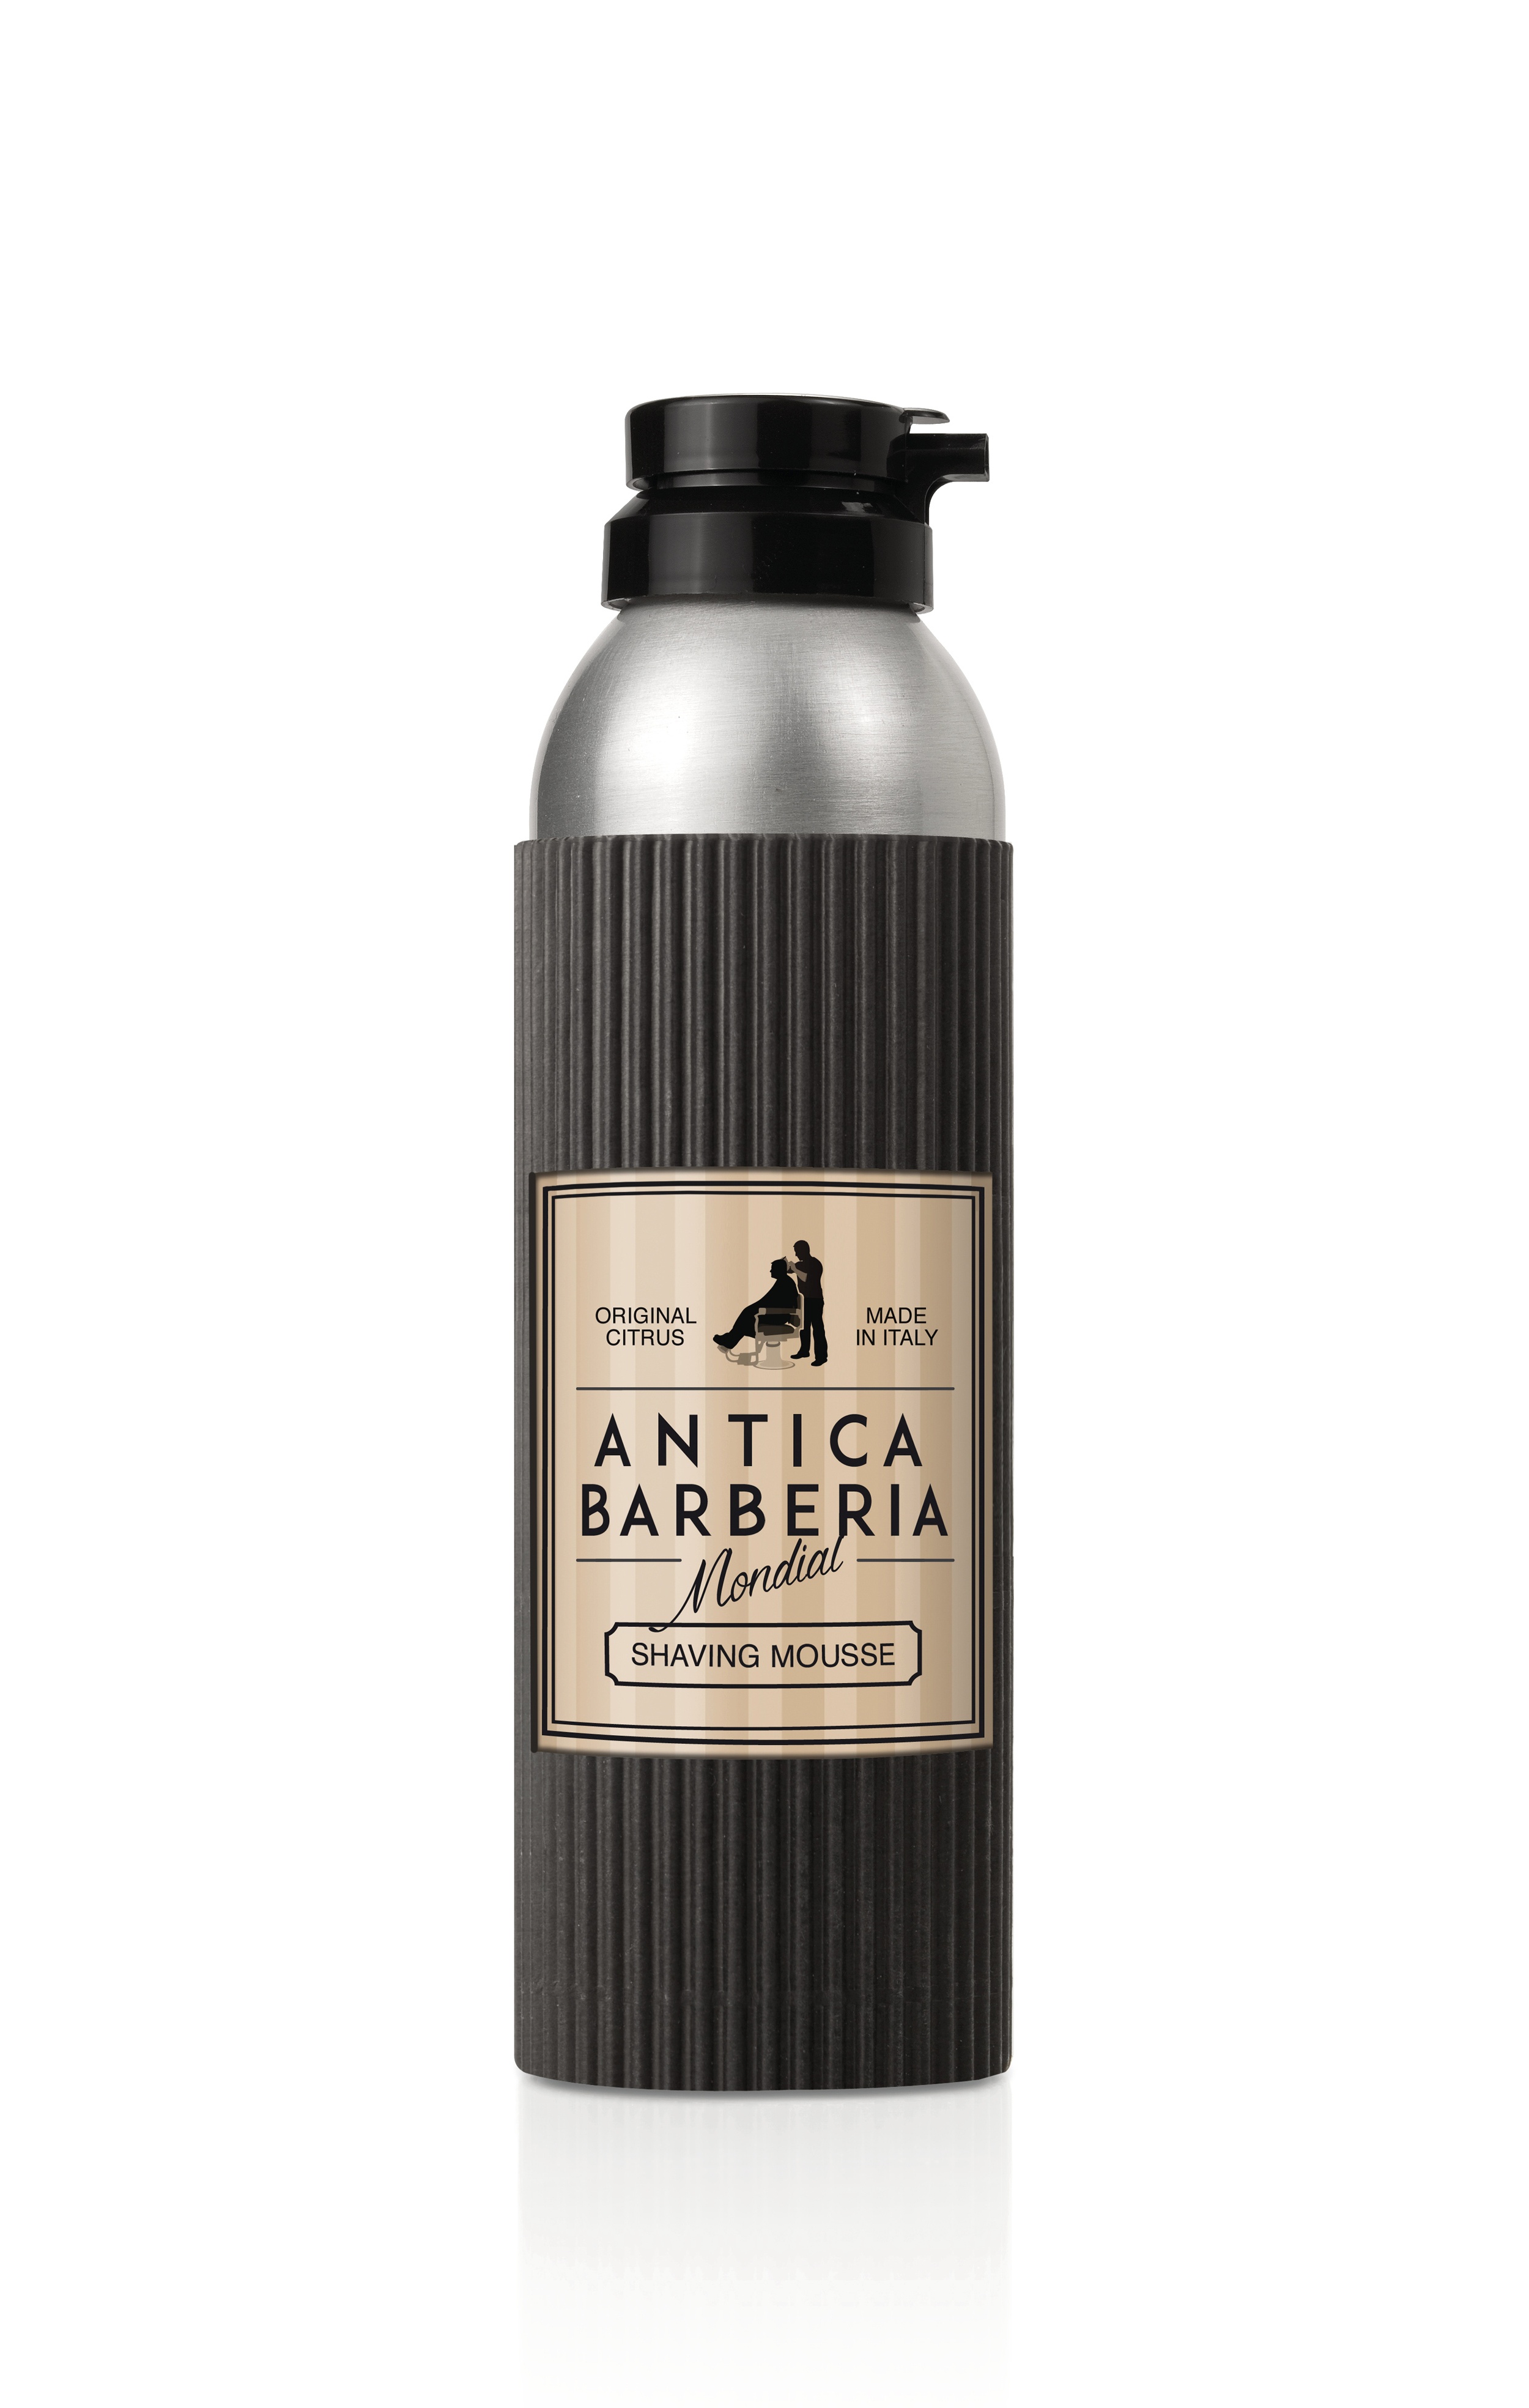 Пена для бритья Mondial Antica Barberia ORIGINAL CITRUS, цитрусовый аромат, 200 мл